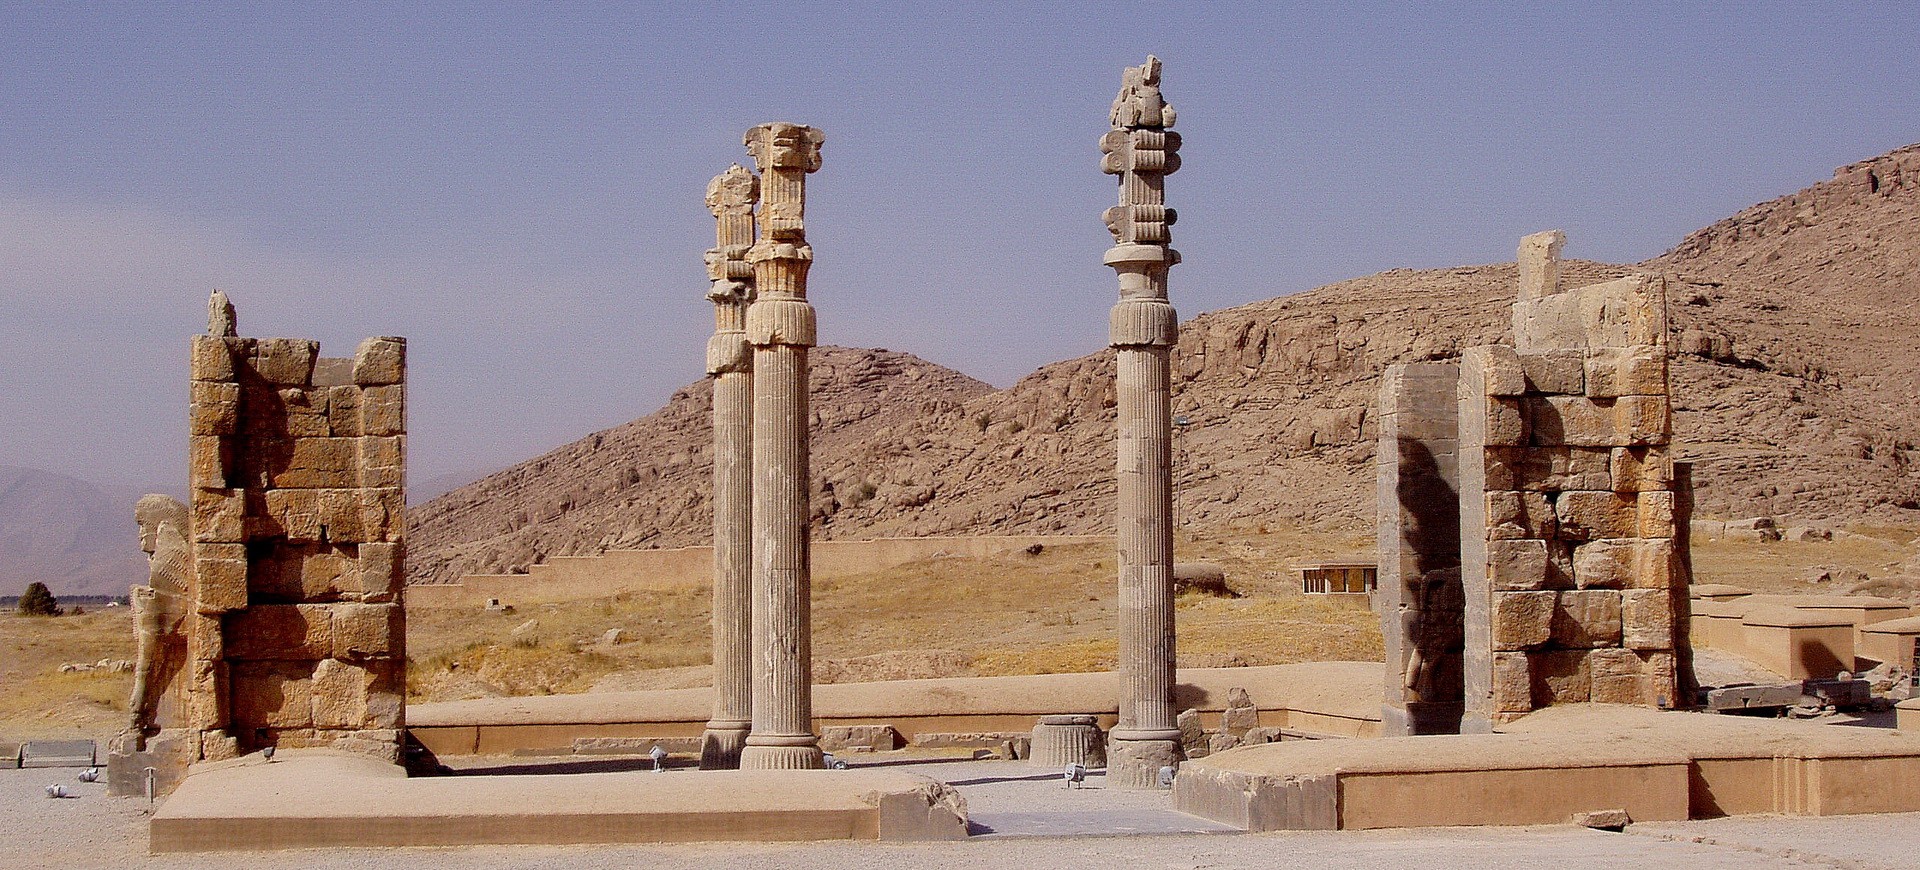 Iran Persepolis site antique